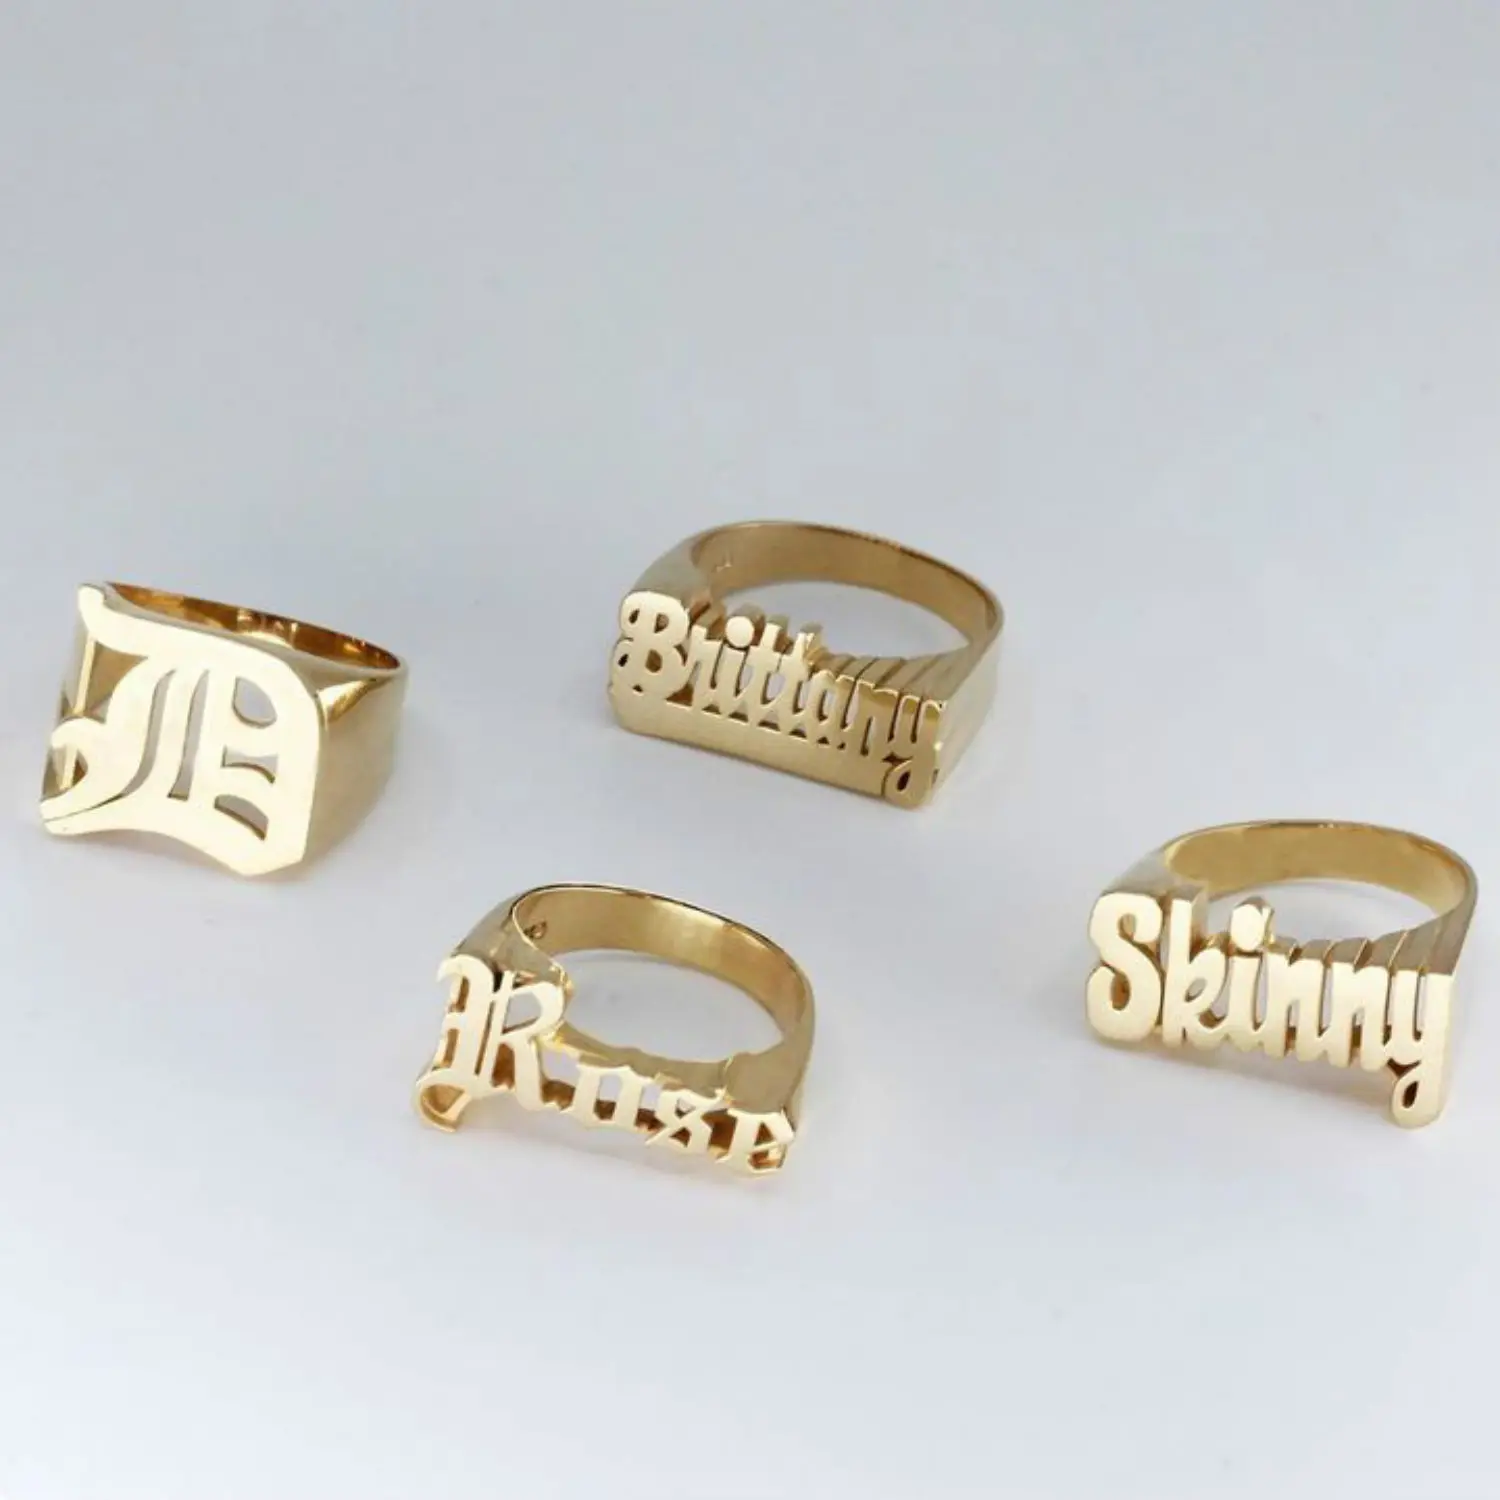 Benutzer definierte 3d Name Ring für Männer Hip-Hop Rock Übertriebene Punk Finger Ring Unisex vergoldet Personal isierte Ring Schmuck Geschenk